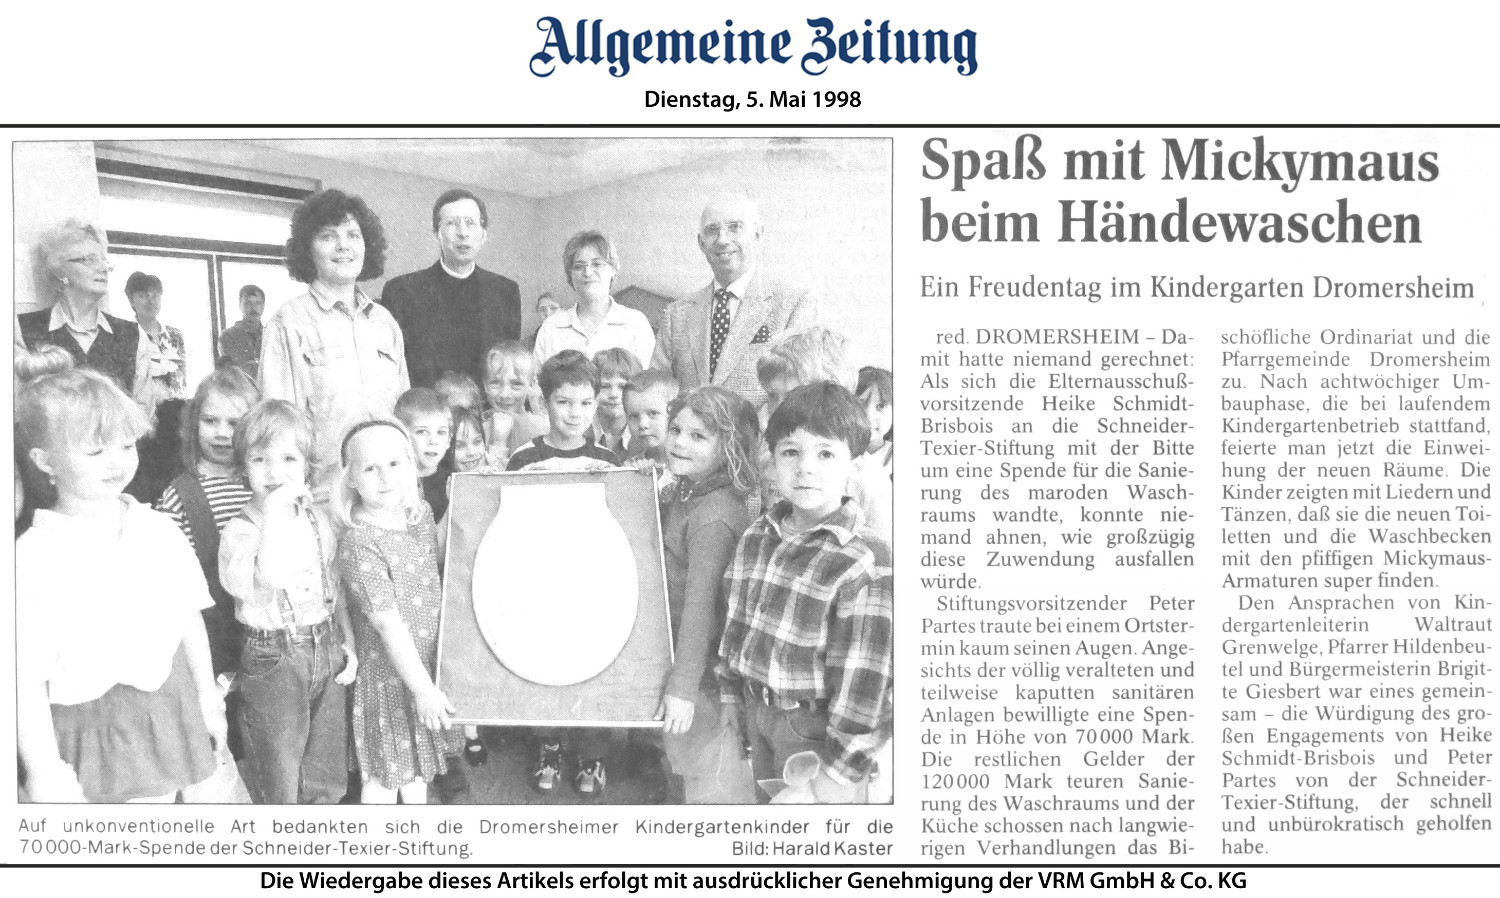 Allgemeine Zeitung - Dienstag 5. Mai 1998 Spaß mit Mickey Maus beim Händewaschen Ein Freundentag im Kindergarten Dromersheim